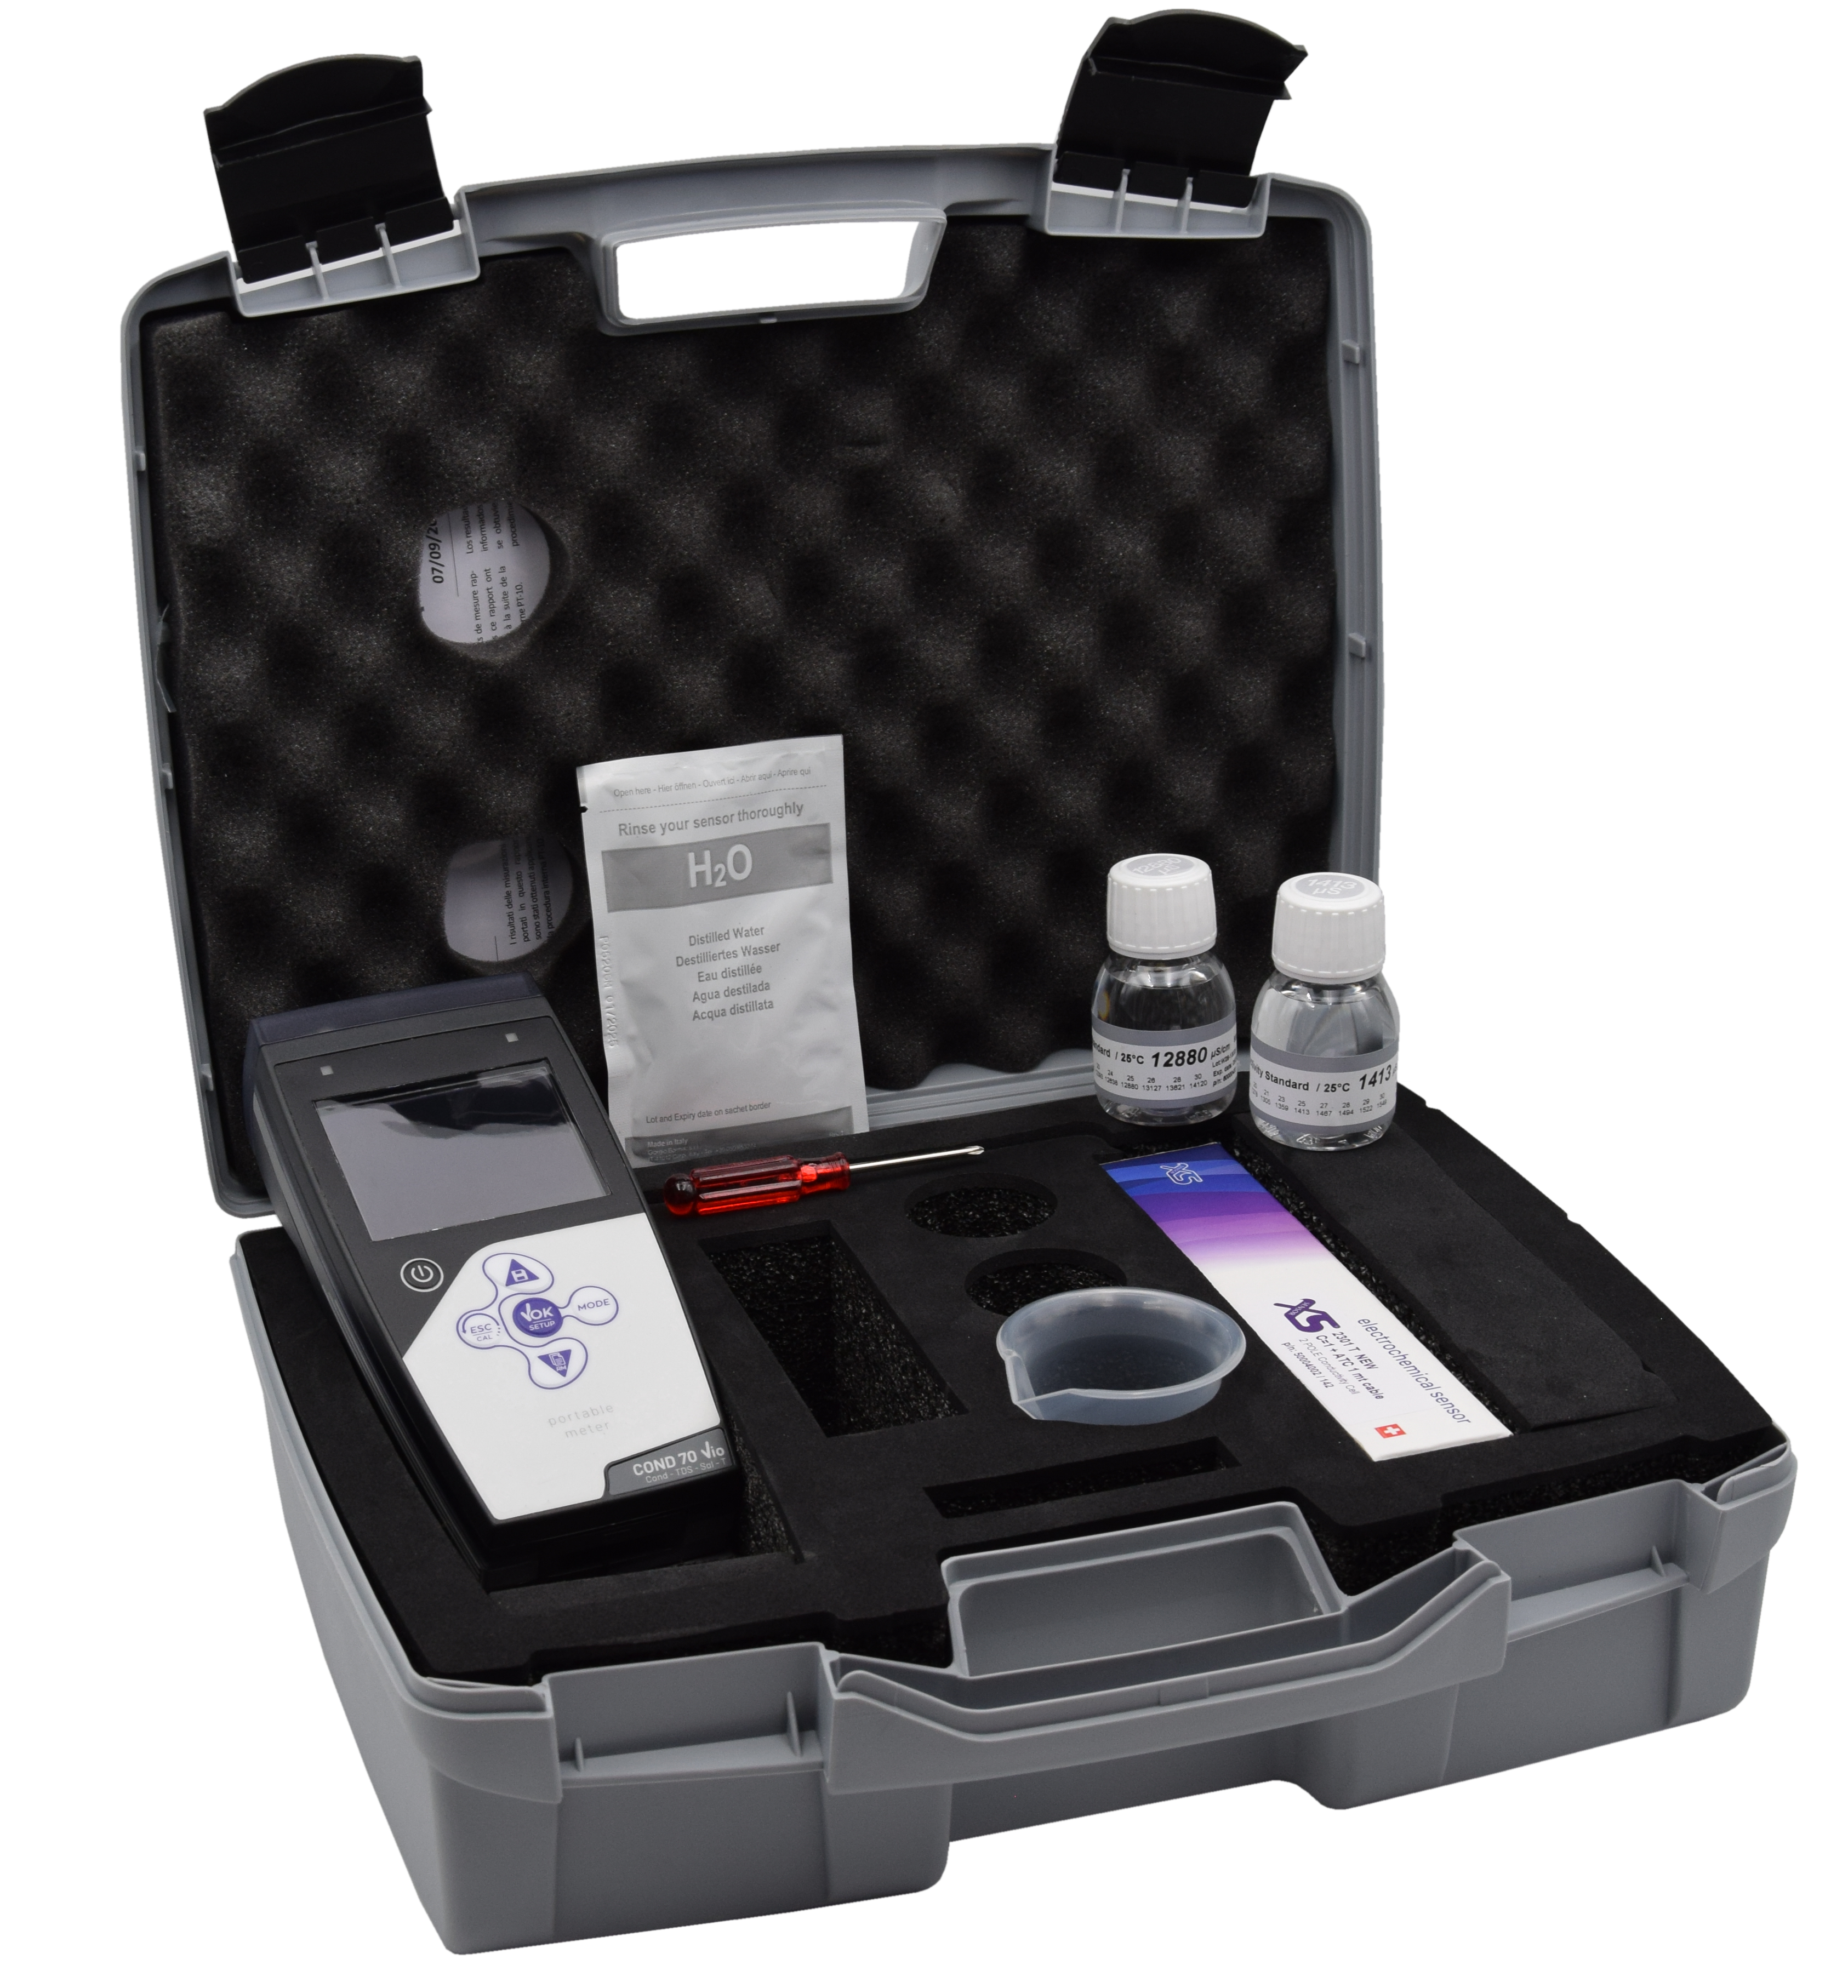 XS Cond 7 Vio Leitfähigkeit/TDS/Temperatur Handmessgerät im Koffer inklusive 2301T Leitfähigkeitselektrode mit integriertem Temperaturfühler